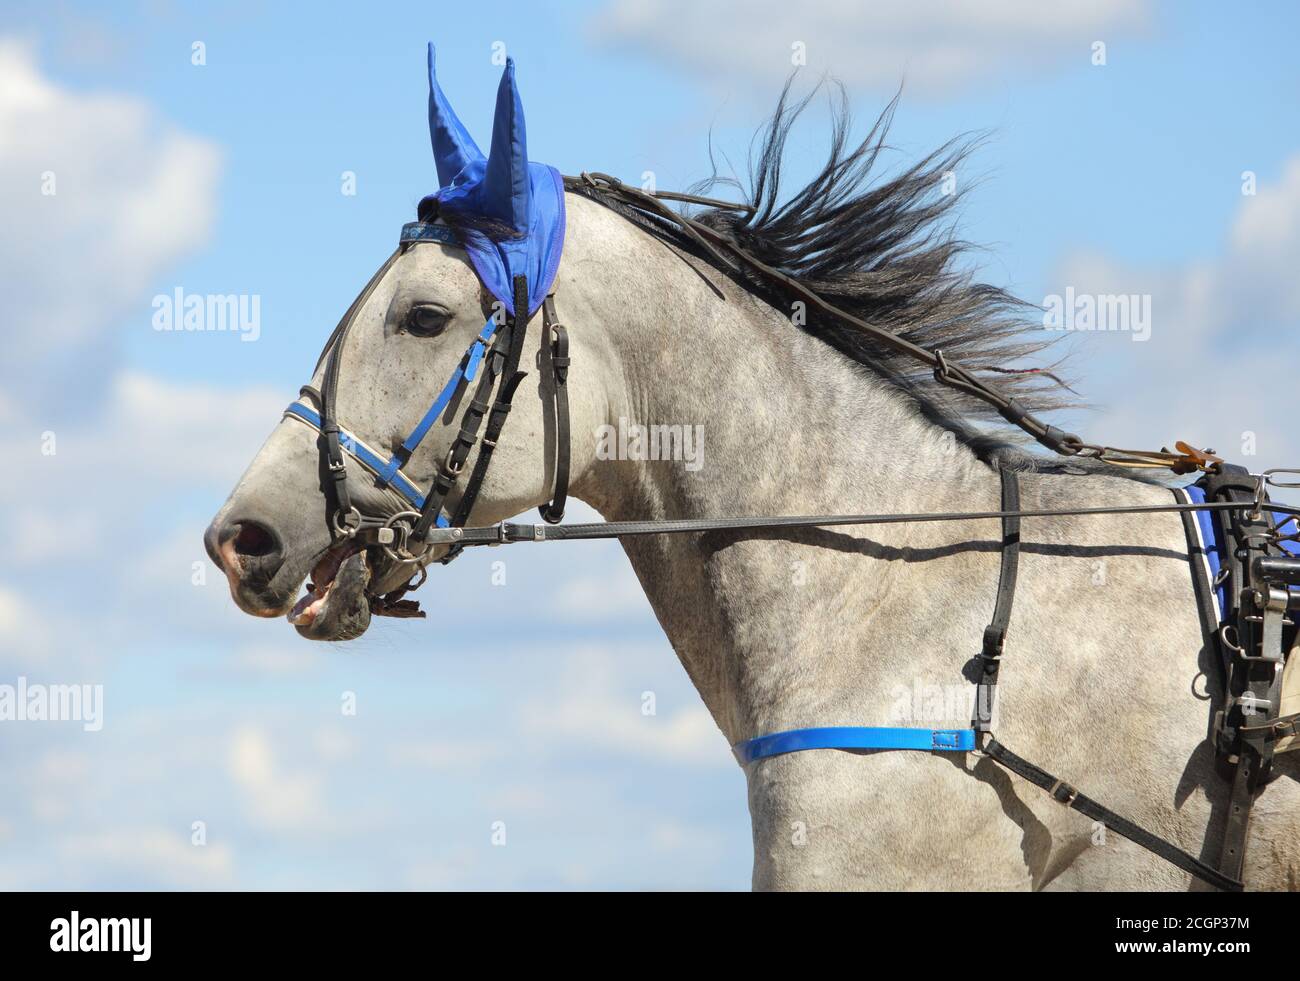 Portrait d'un cheval gris Orlov Trotter race en mouvement sur l'hippodrome Banque D'Images